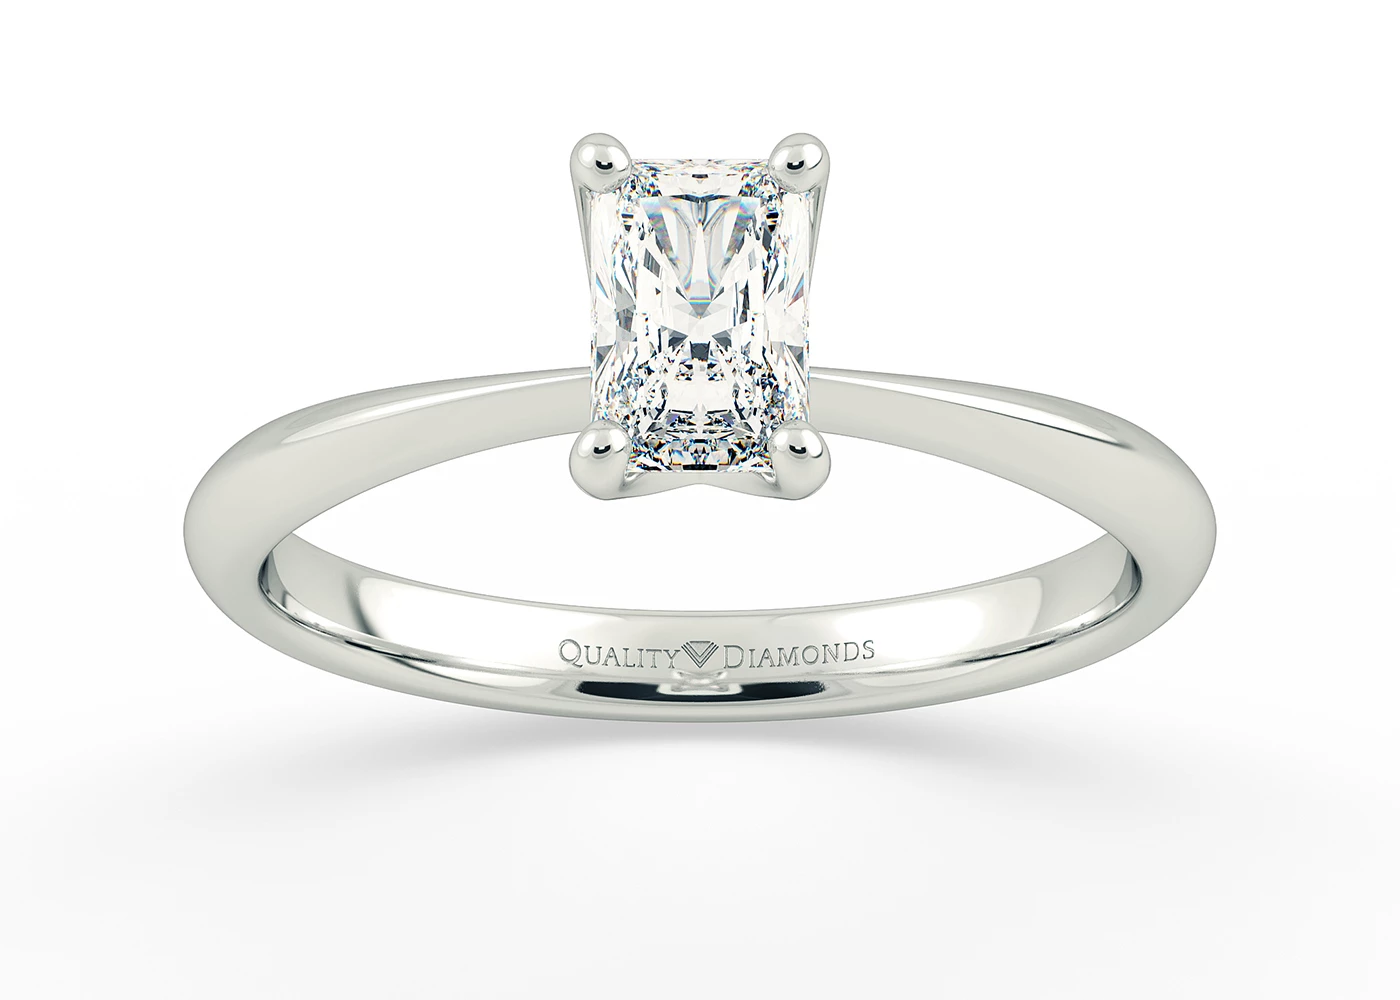 Half Carat Radiant Solitaire Diamond Engagement Ring in Platinum 950